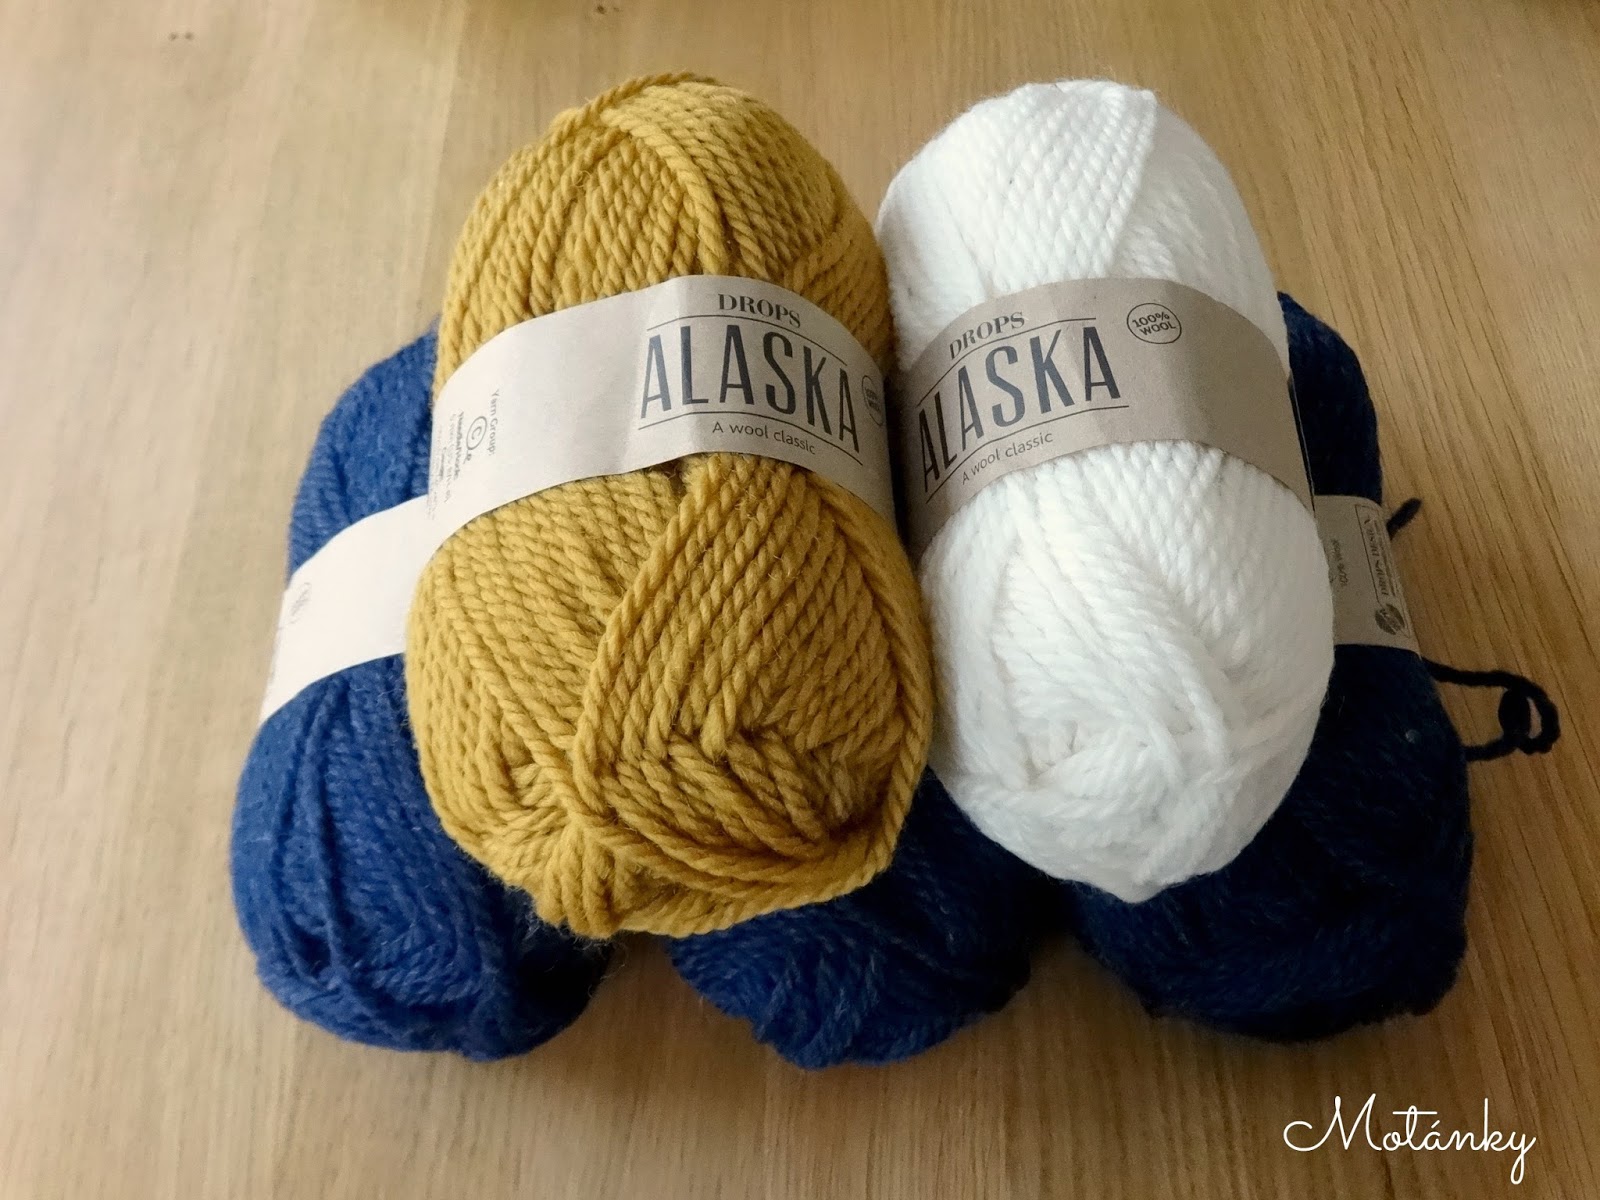 DROPS Alaska - A wool classic!